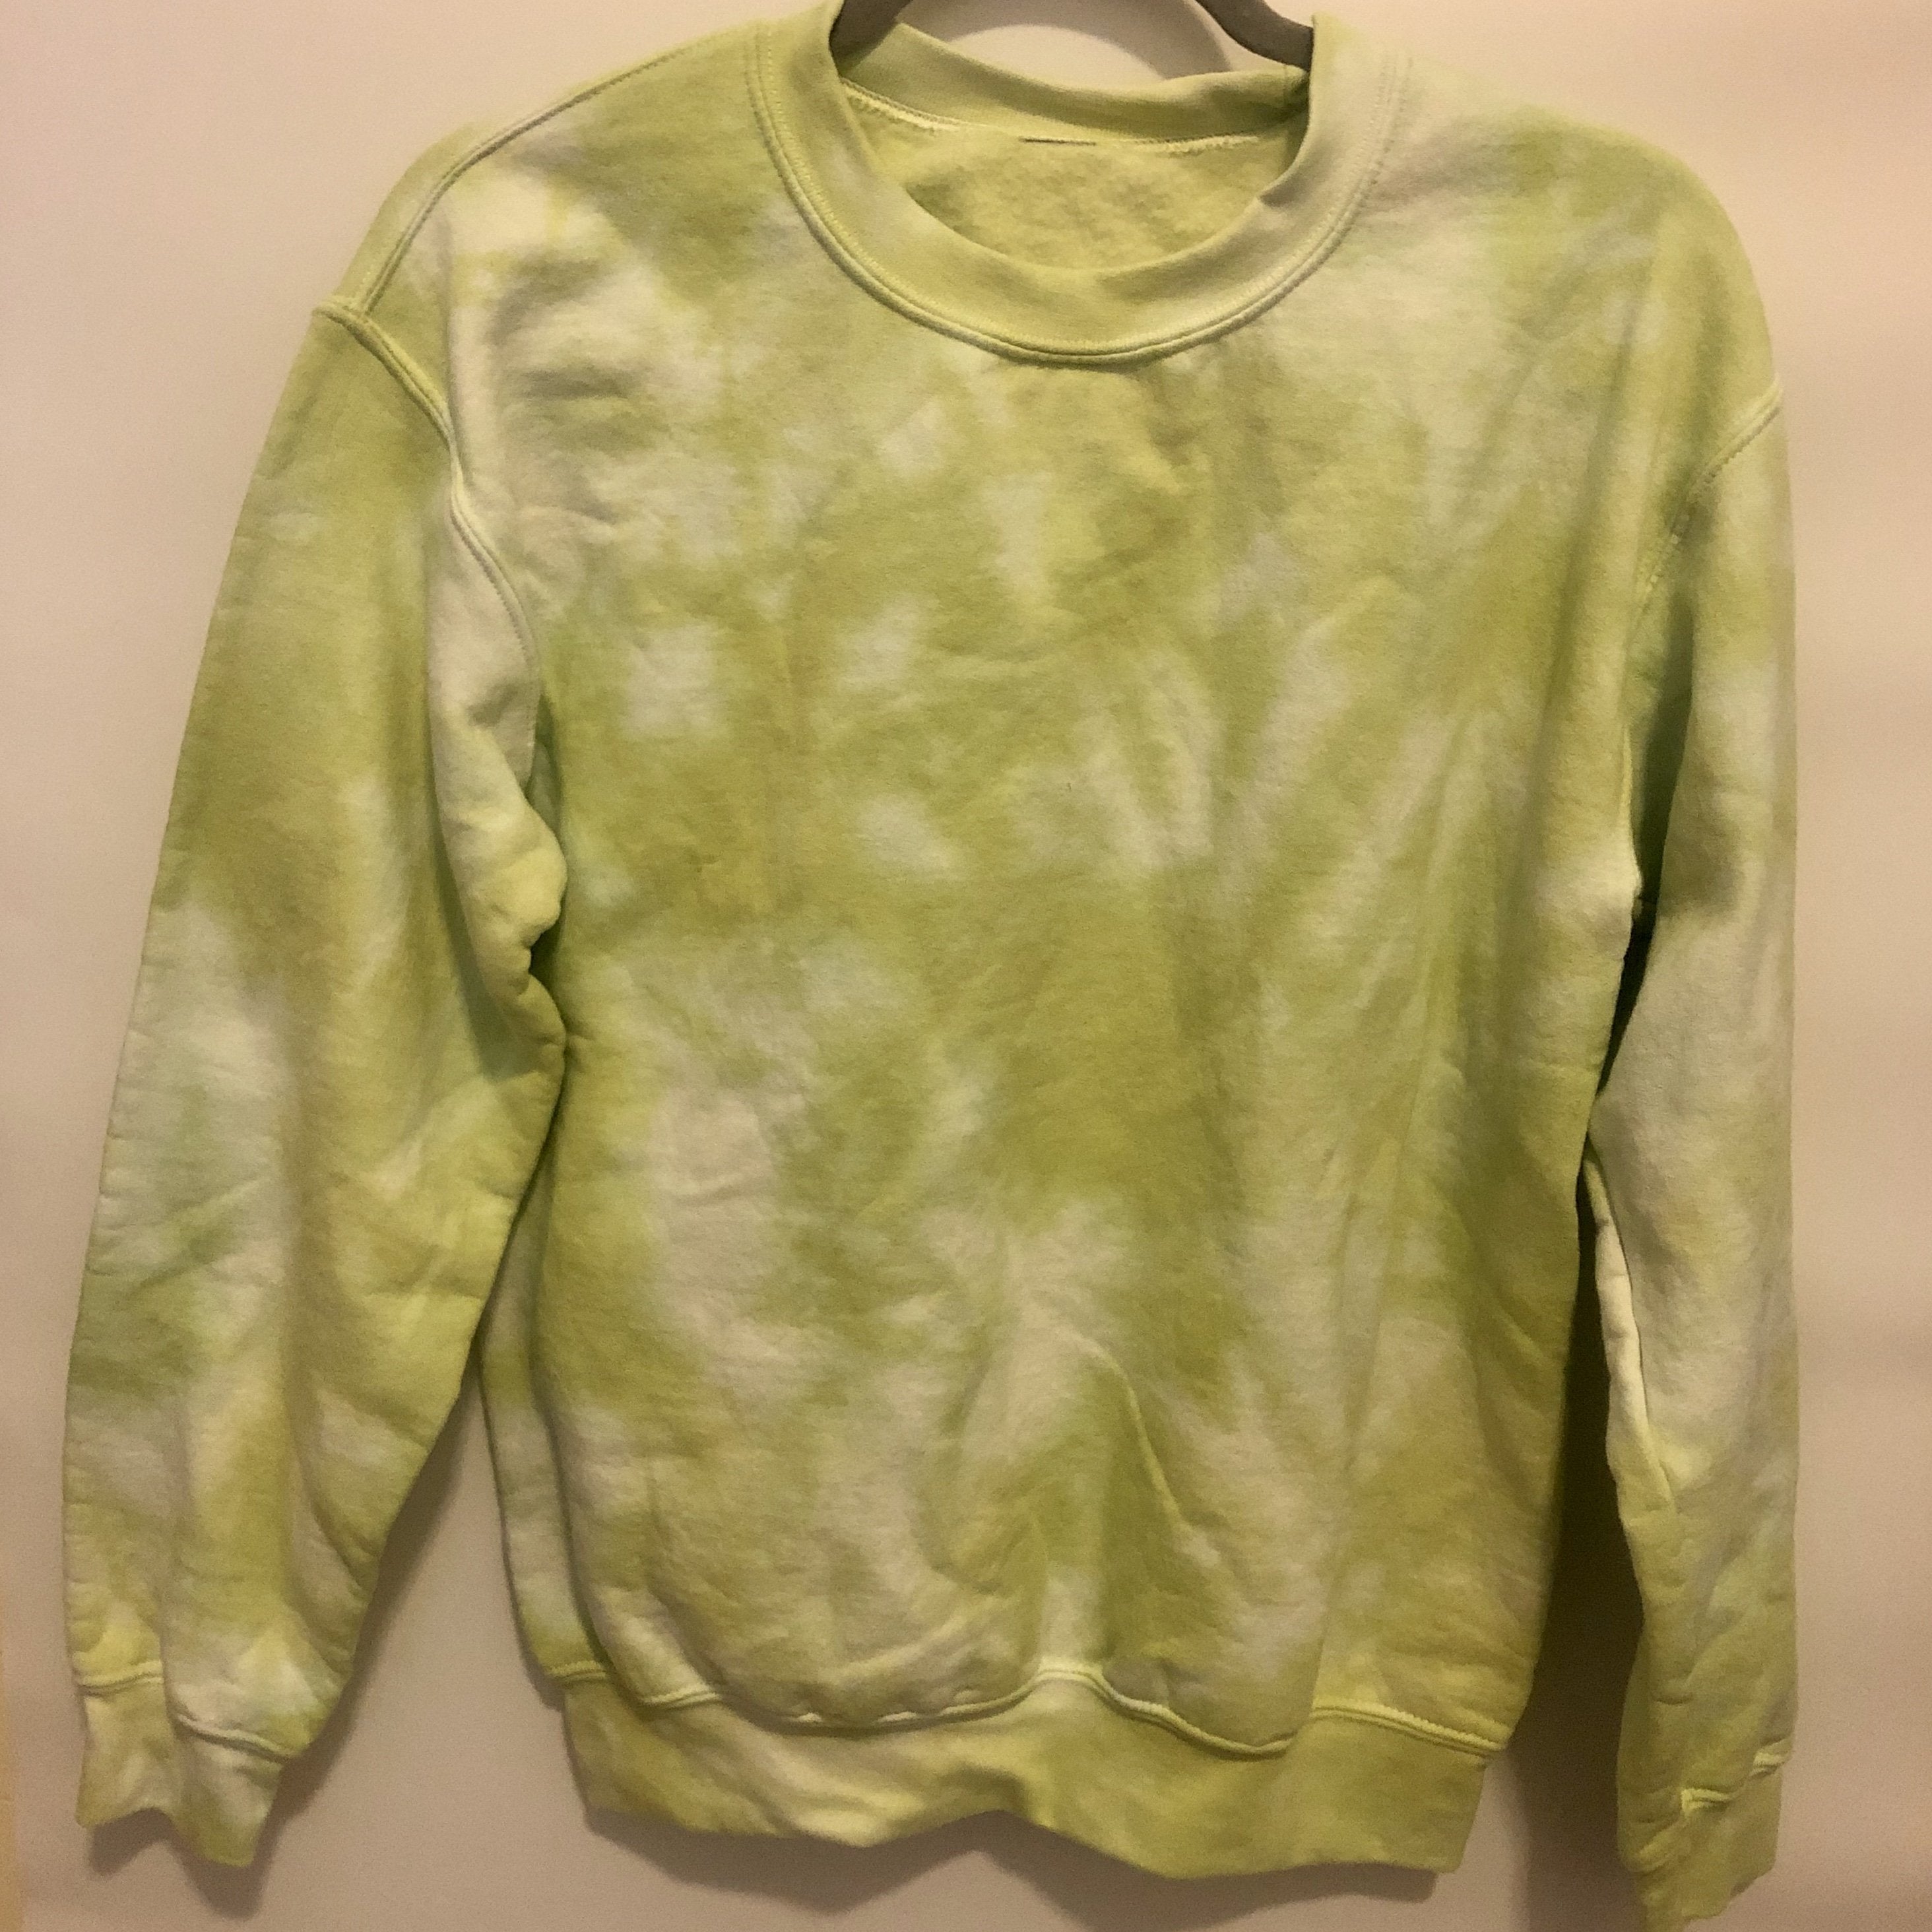 Crewneck Sweatshirt - Get In Lime Tie-Dye Crewneck - SM - 4 DOTS